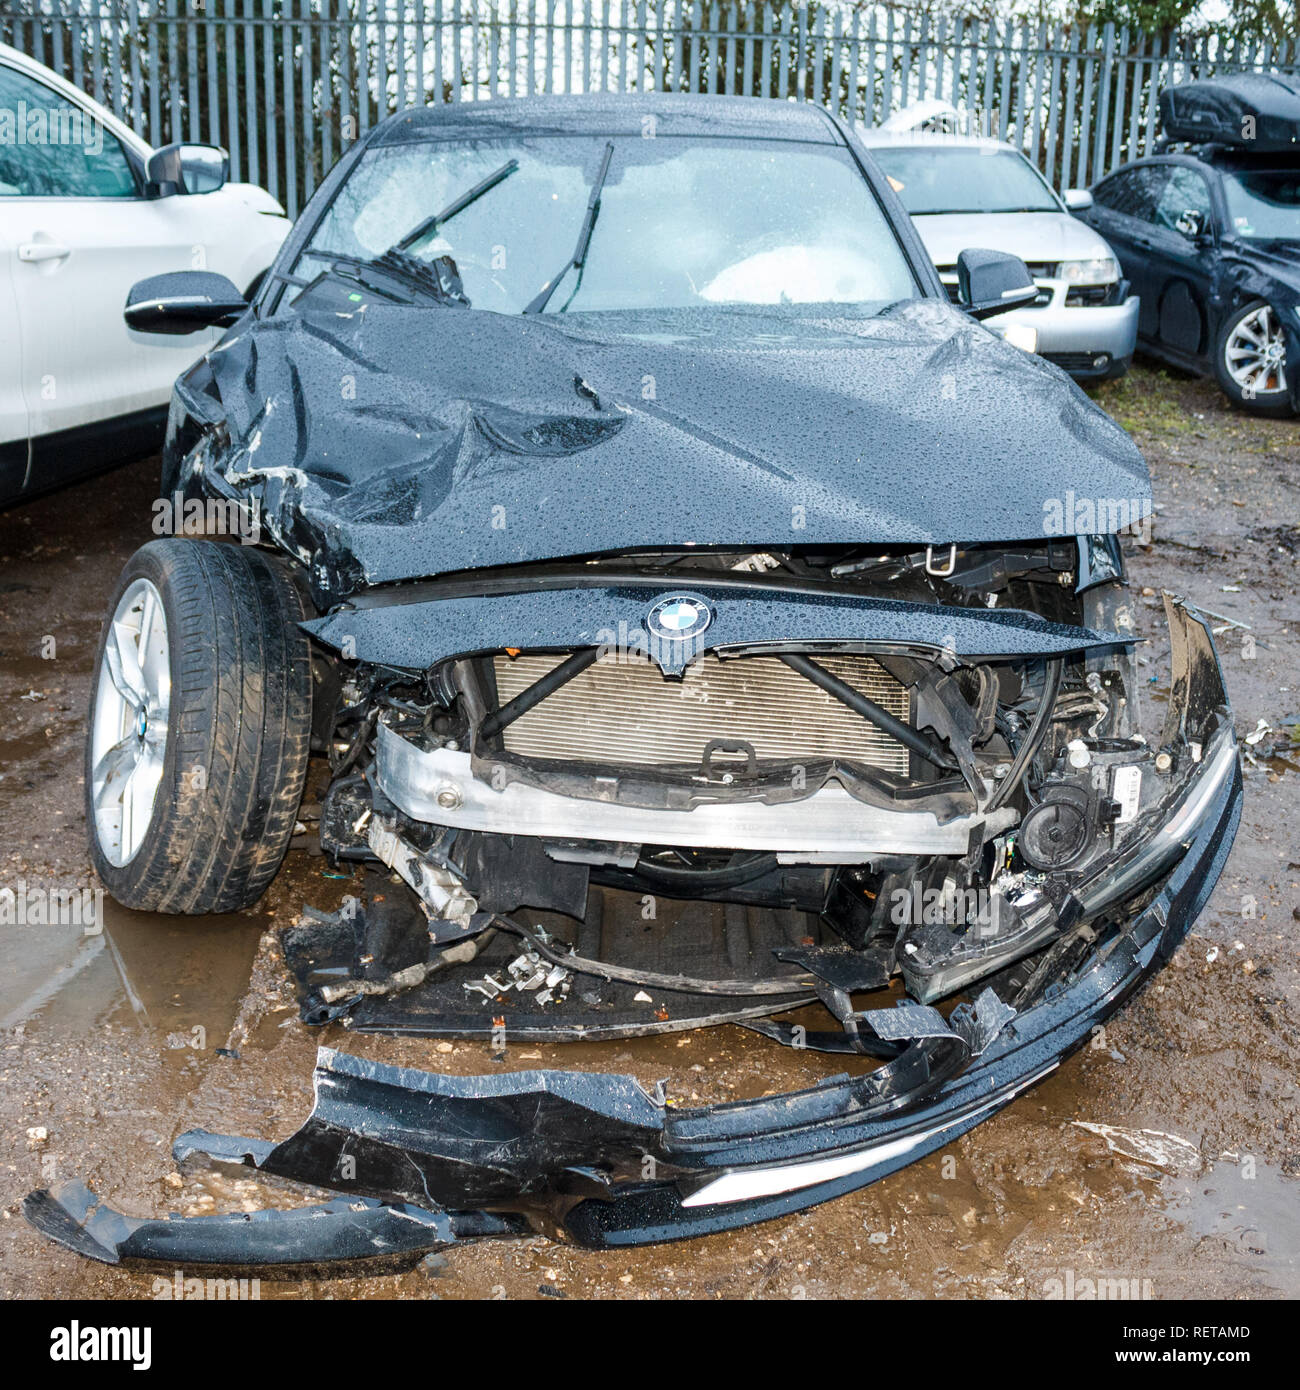 Car Crash Vehicle Damage BMW Head Side On Crash Damage Stock Photo